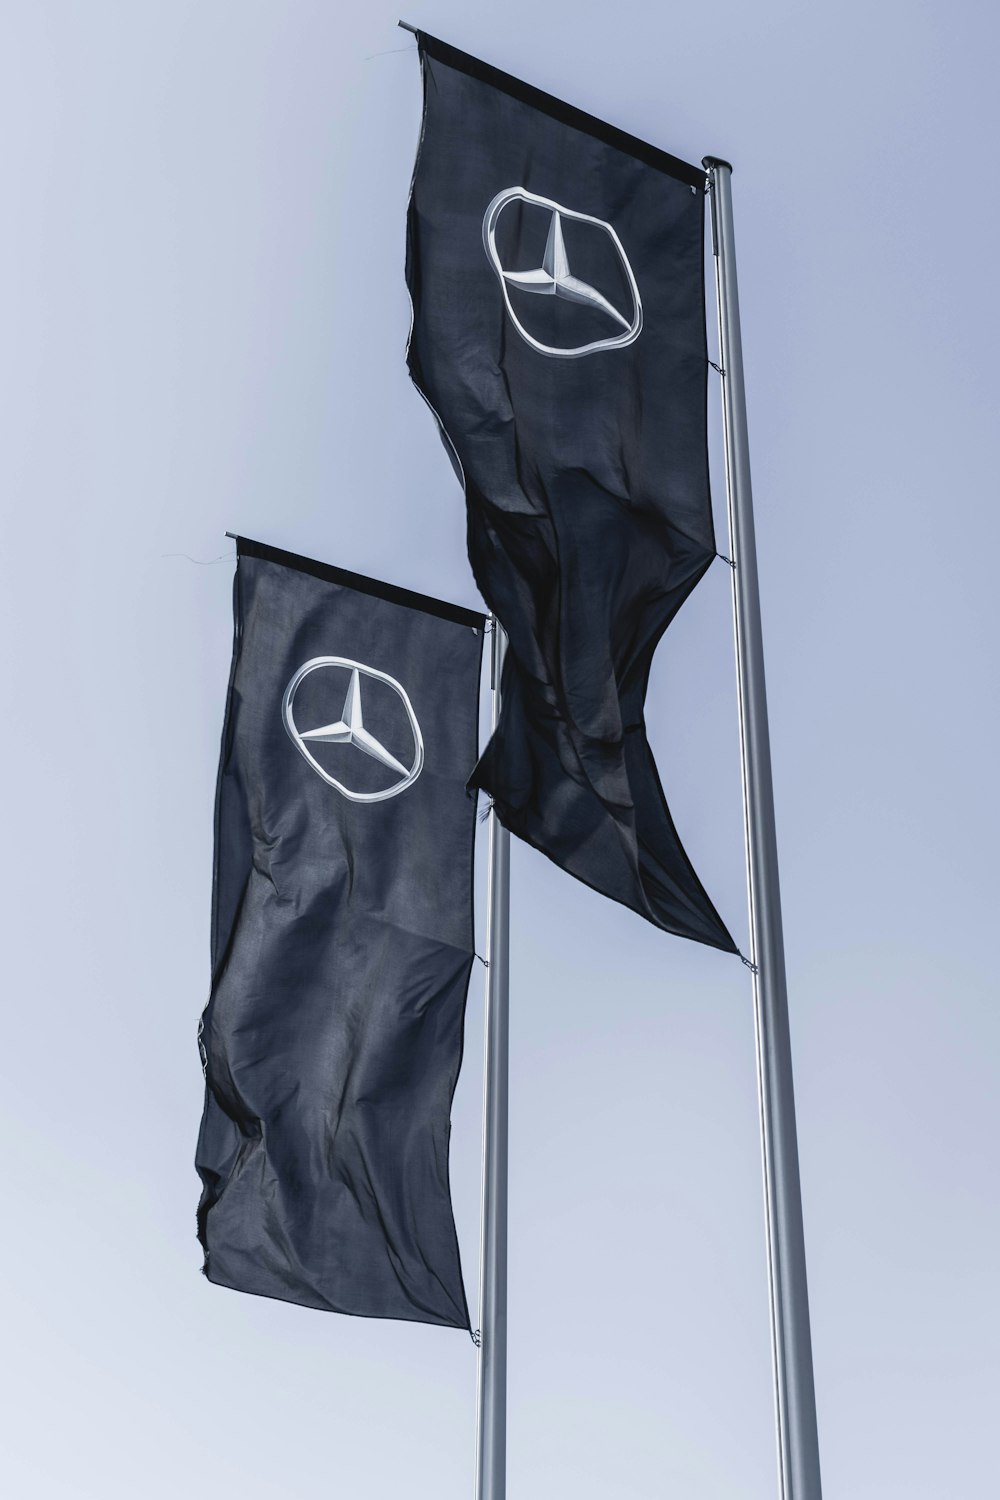 Striscioni Mercedes-Benz e Scion che sventolano